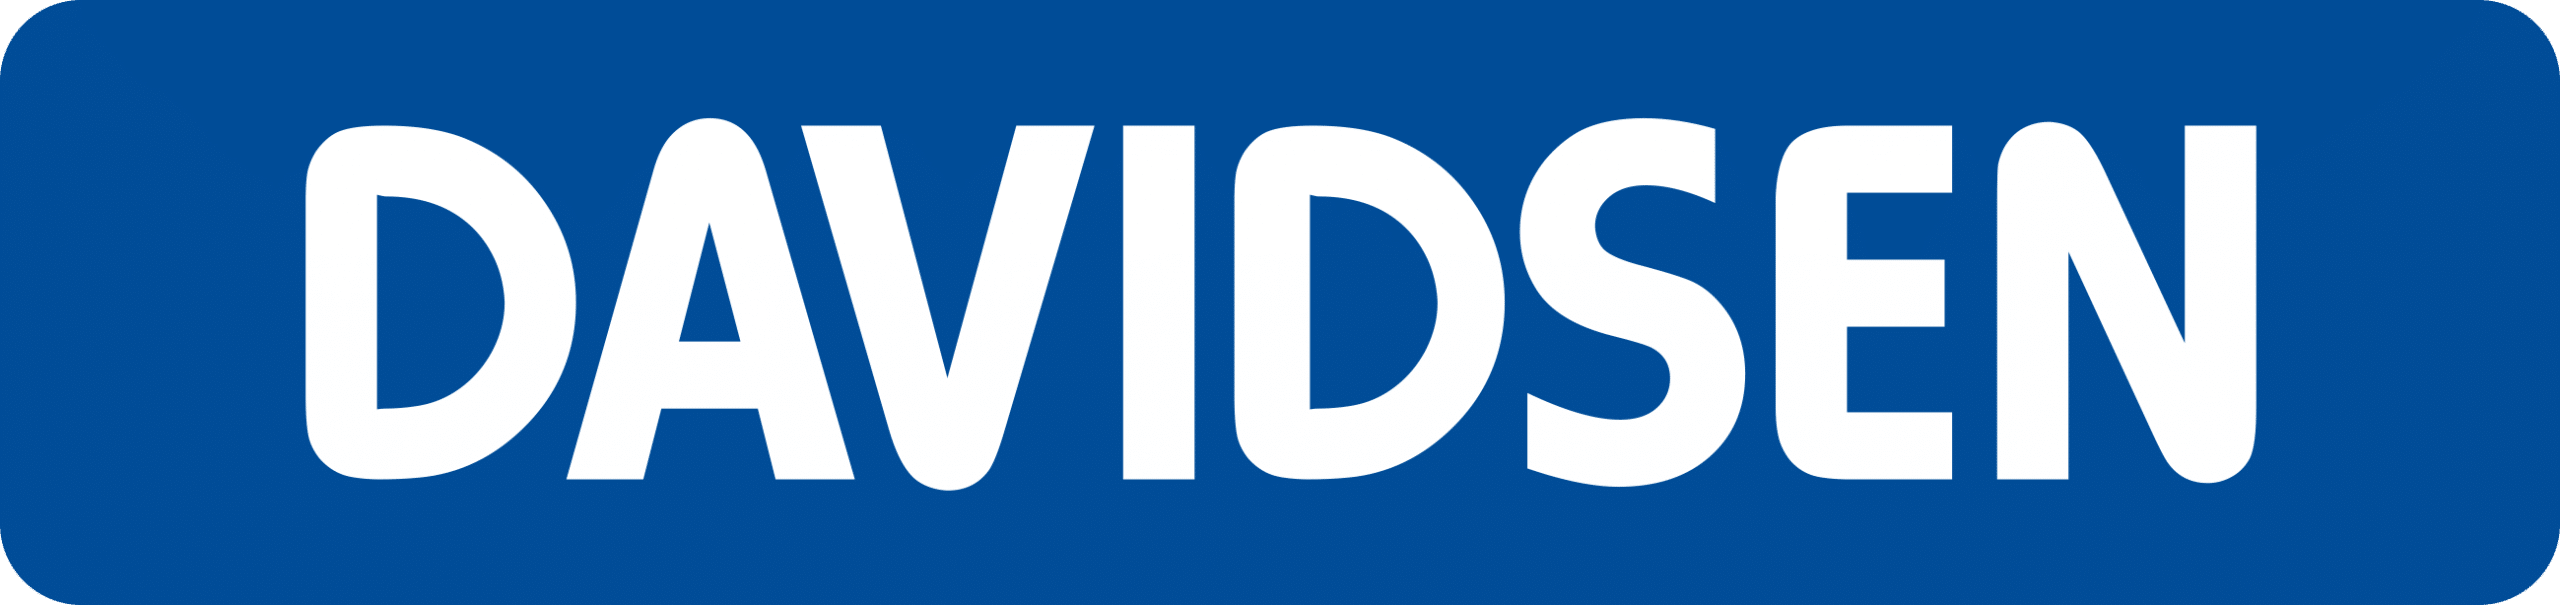 Davidsen_logo